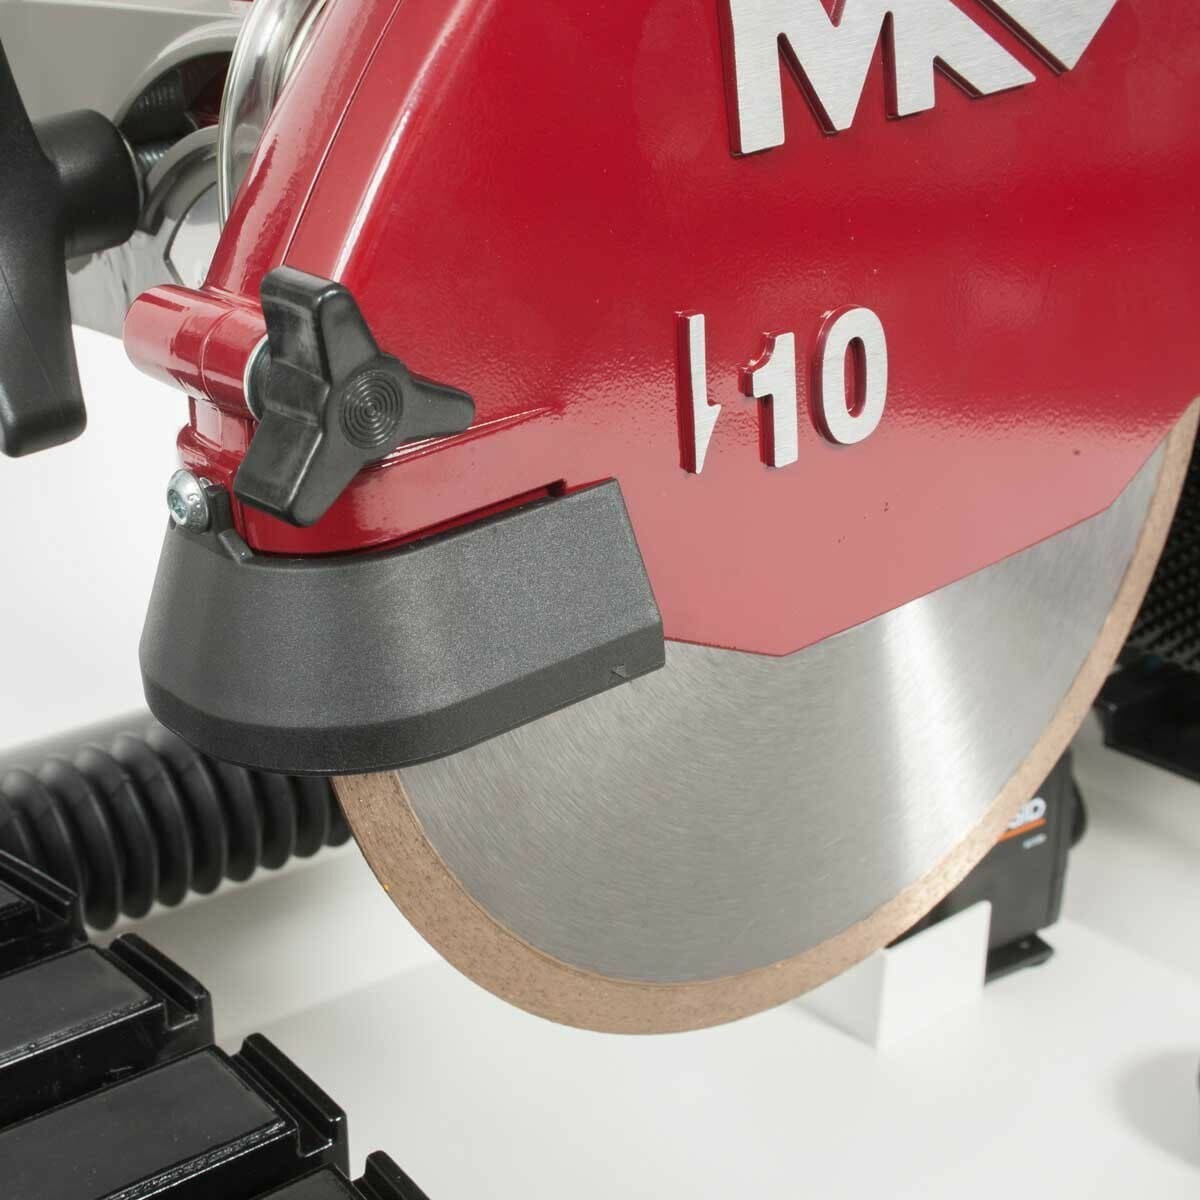 MK TX-4 Tile Saw - MK Diamond